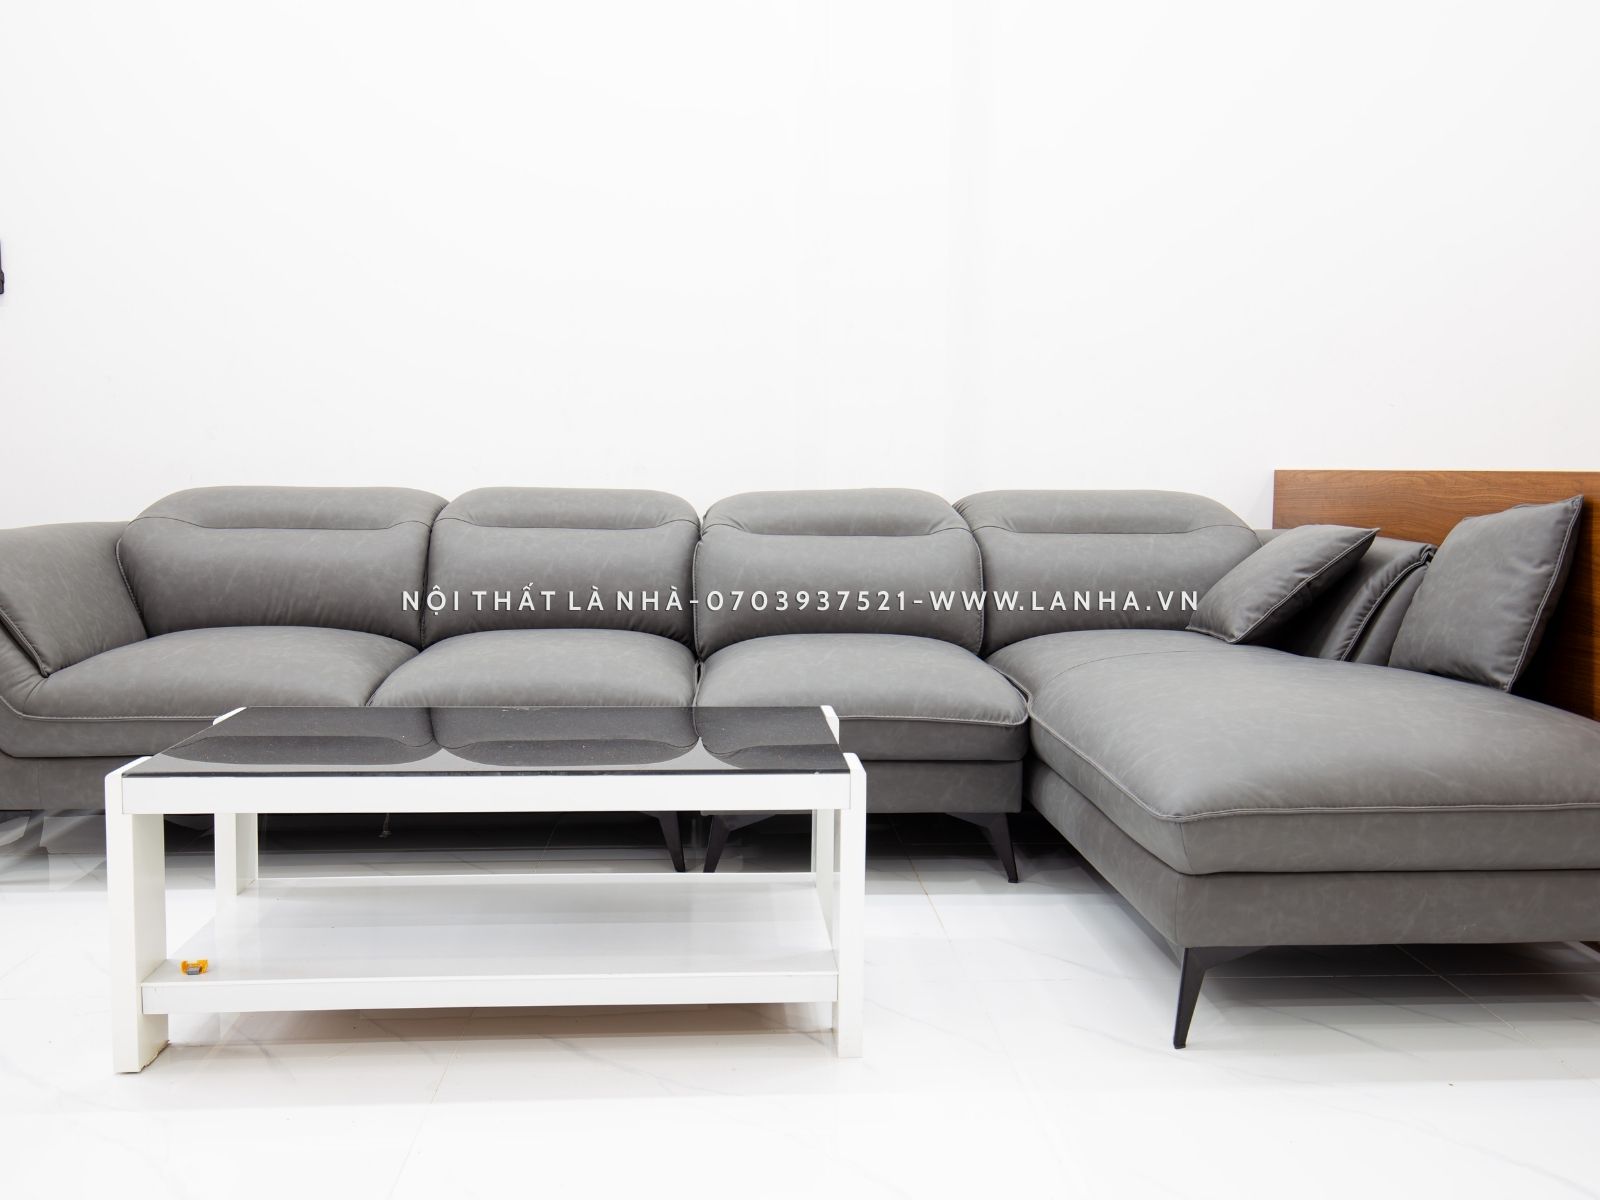 Sofa màu xám đặt phòng khách sang trọng, hiện đại